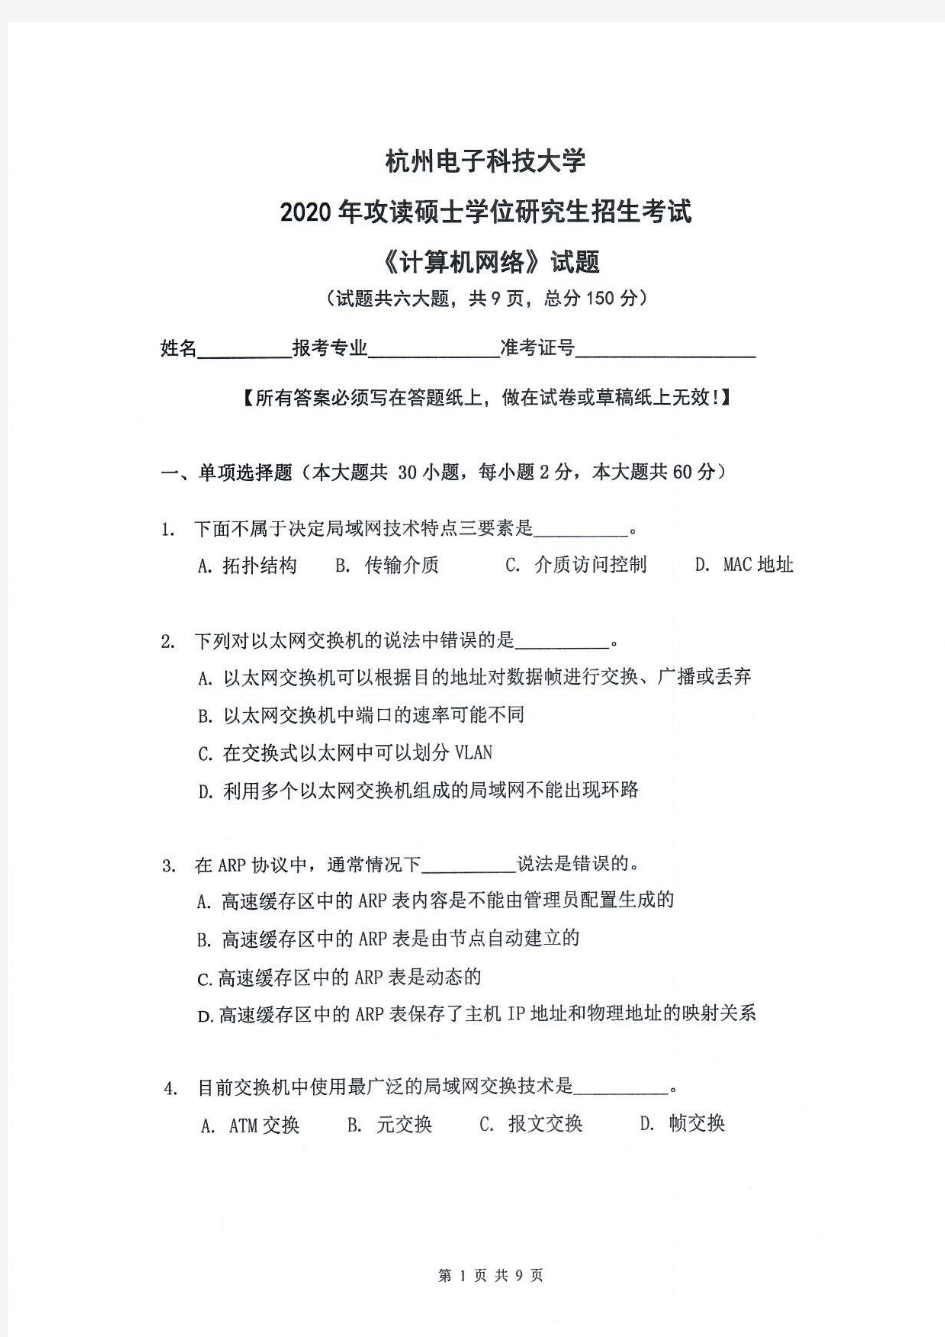 计算机网络-杭州电子科技大学2020年攻读硕士学位研究生招生考试试题